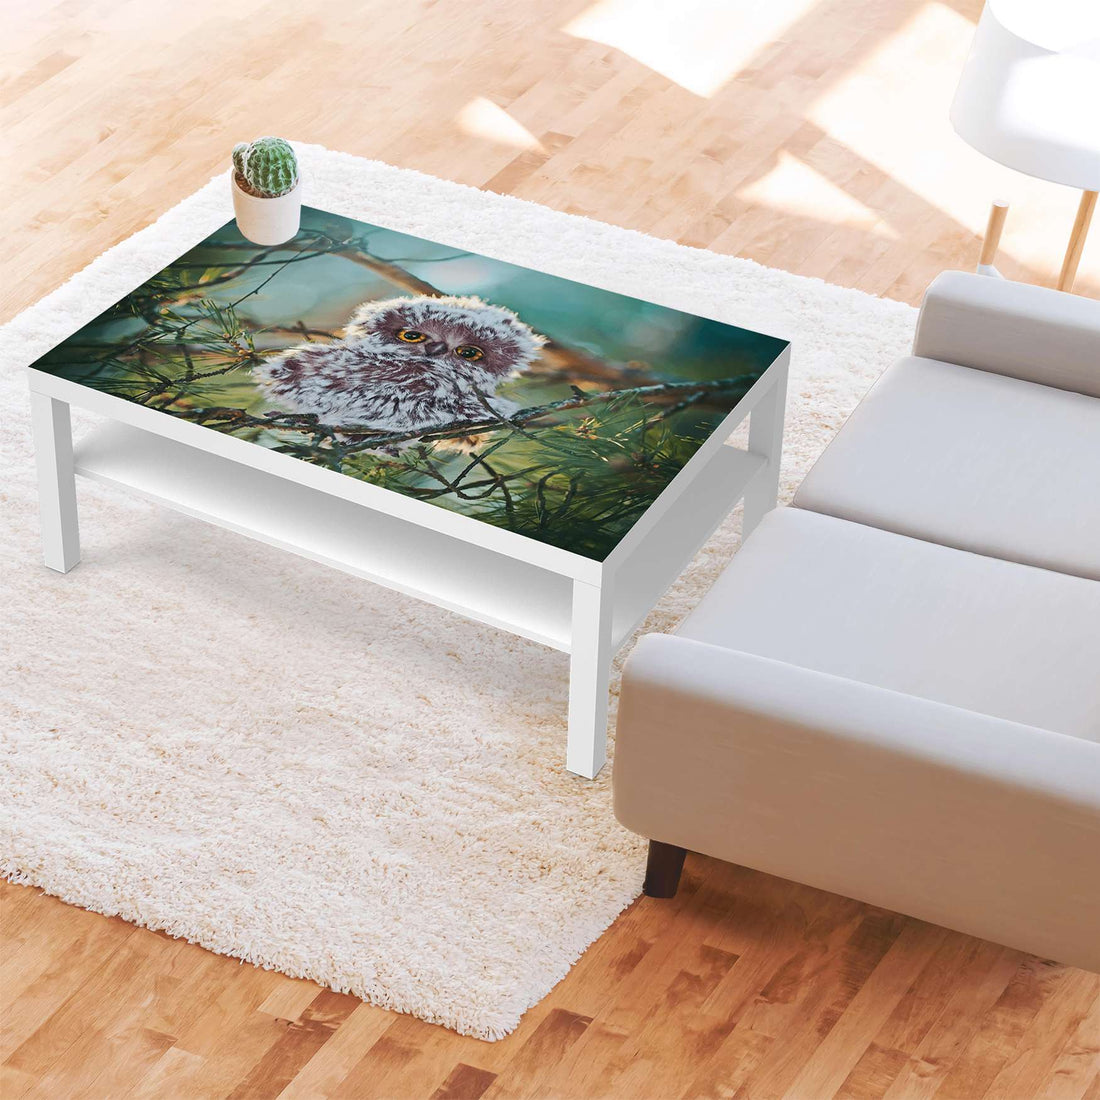 Klebefolie Wuschel - IKEA Lack Tisch 118x78 cm - Wohnzimmer